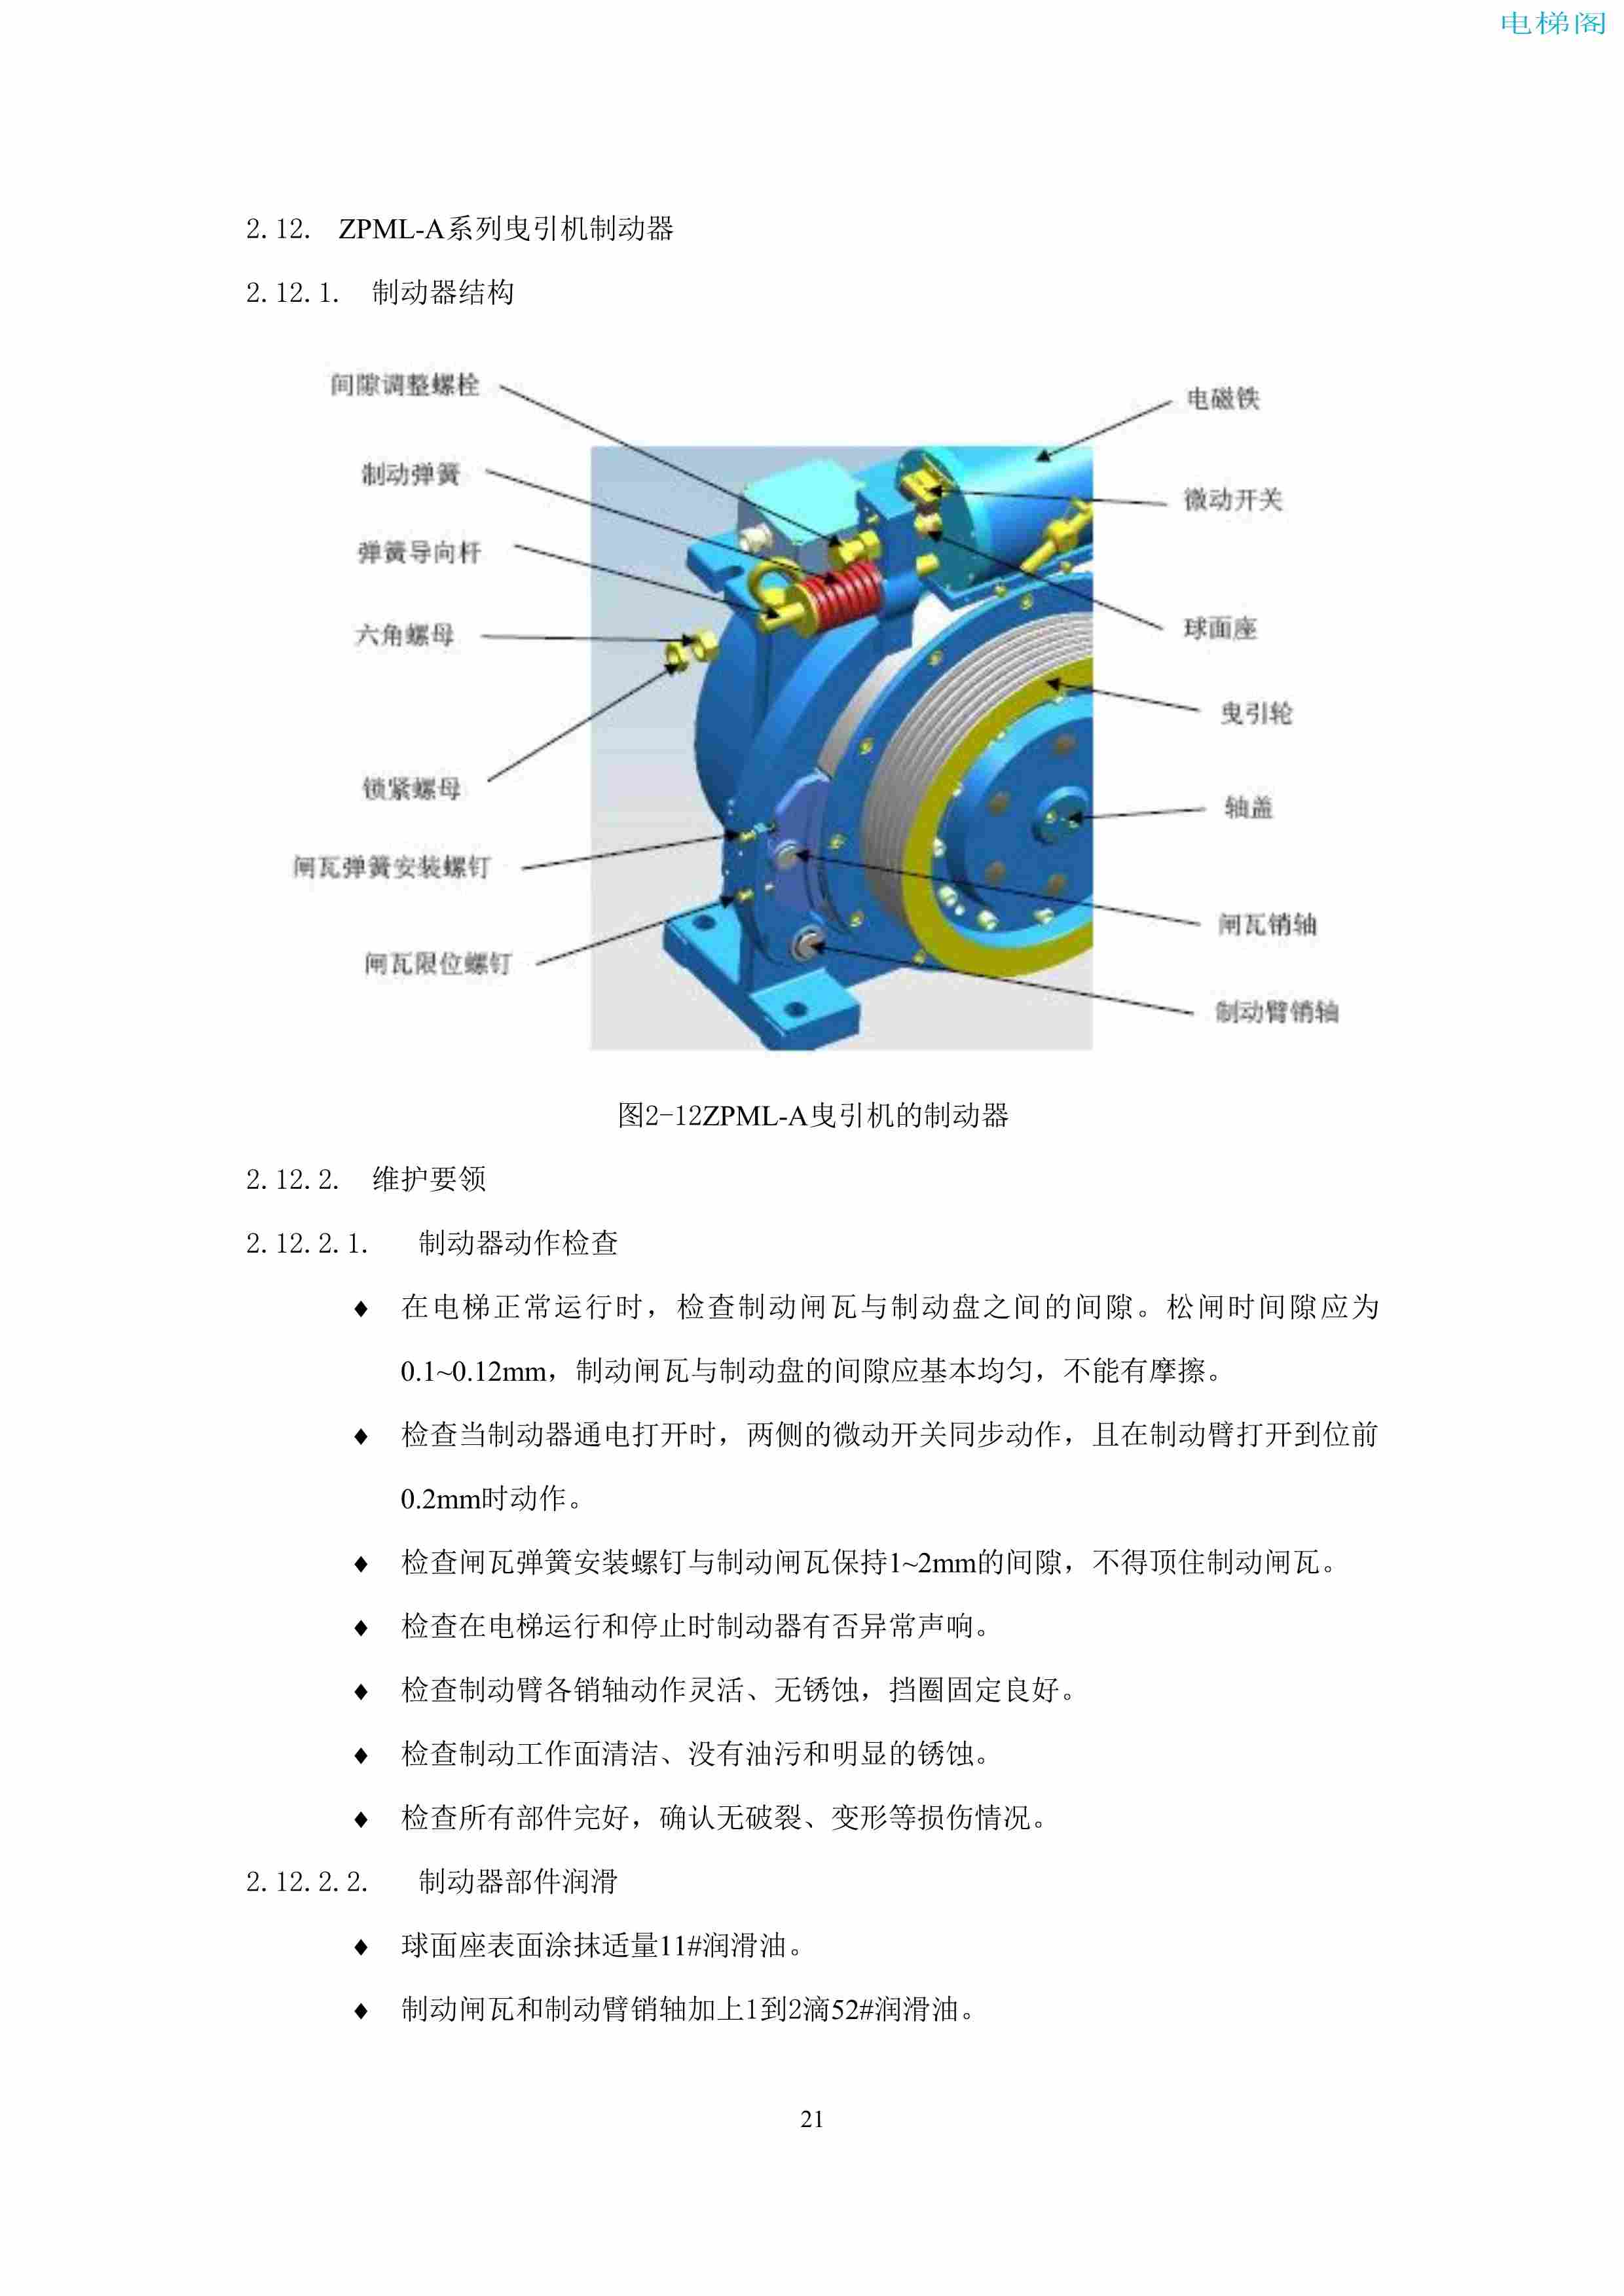 上海三菱电梯有限公司电梯制动器维护作业要领汇编_23.jpg